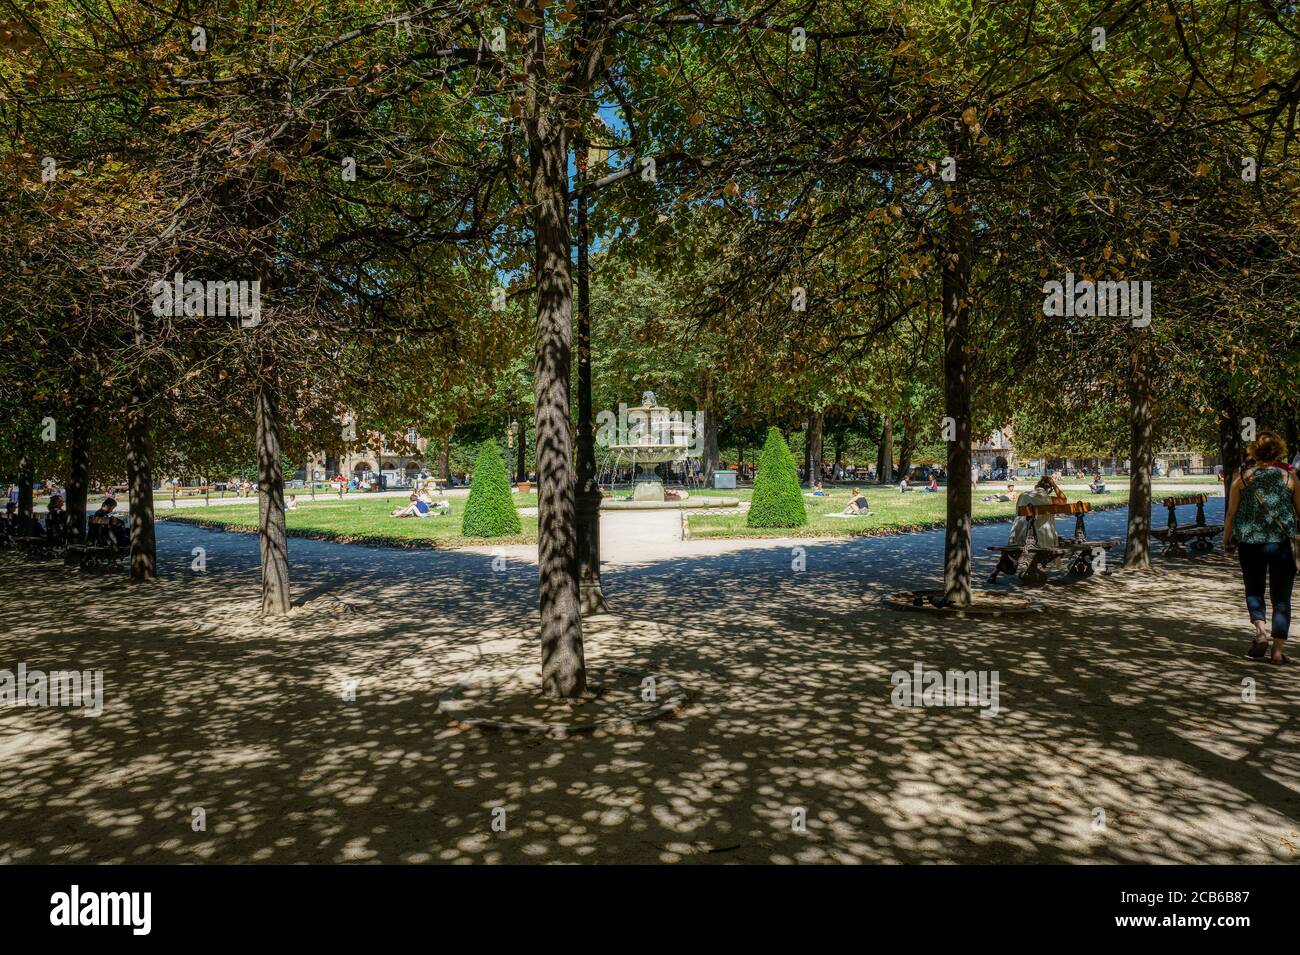 Personnes se détendant sur les pelouses verdoyantes de la célèbre place des Vosges - Paris, France Banque D'Images